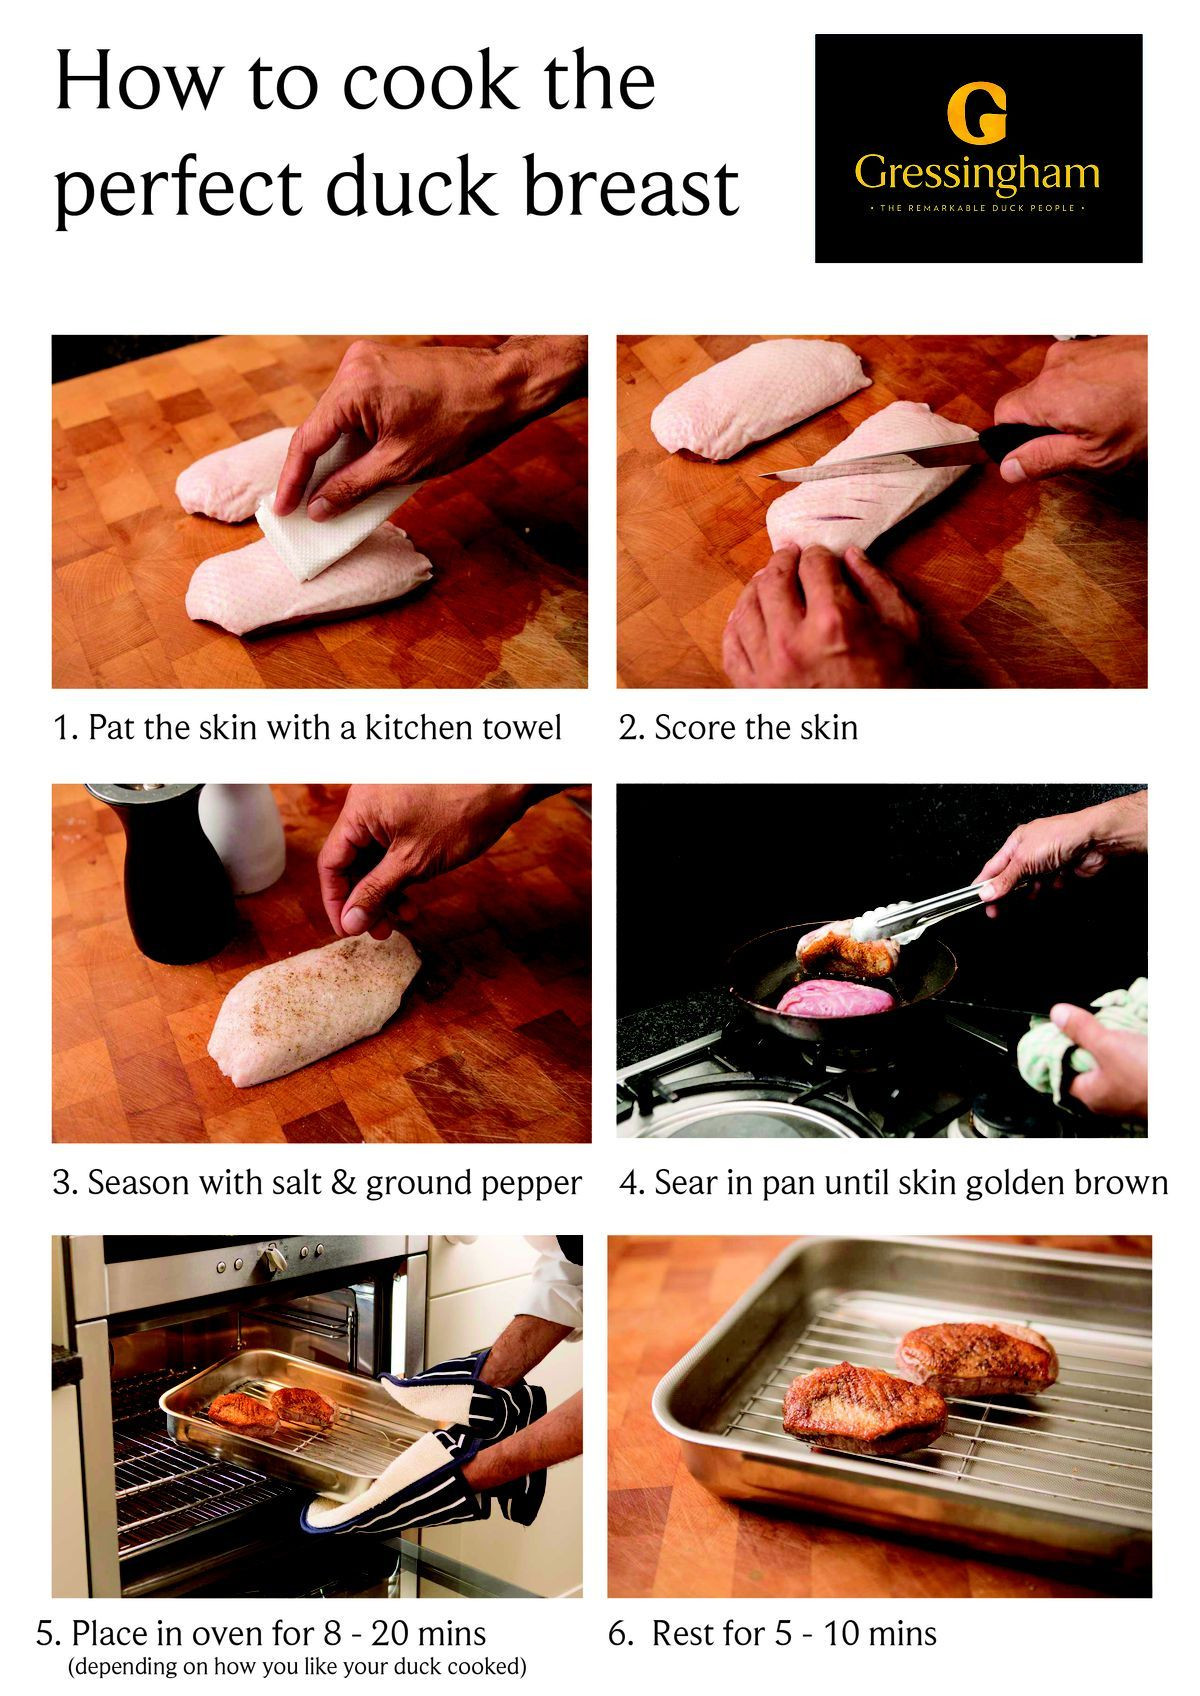 Easy Wild Duck Breast Recipes
 a479adbf13c8a d51a8 1 200×1 696 pixels